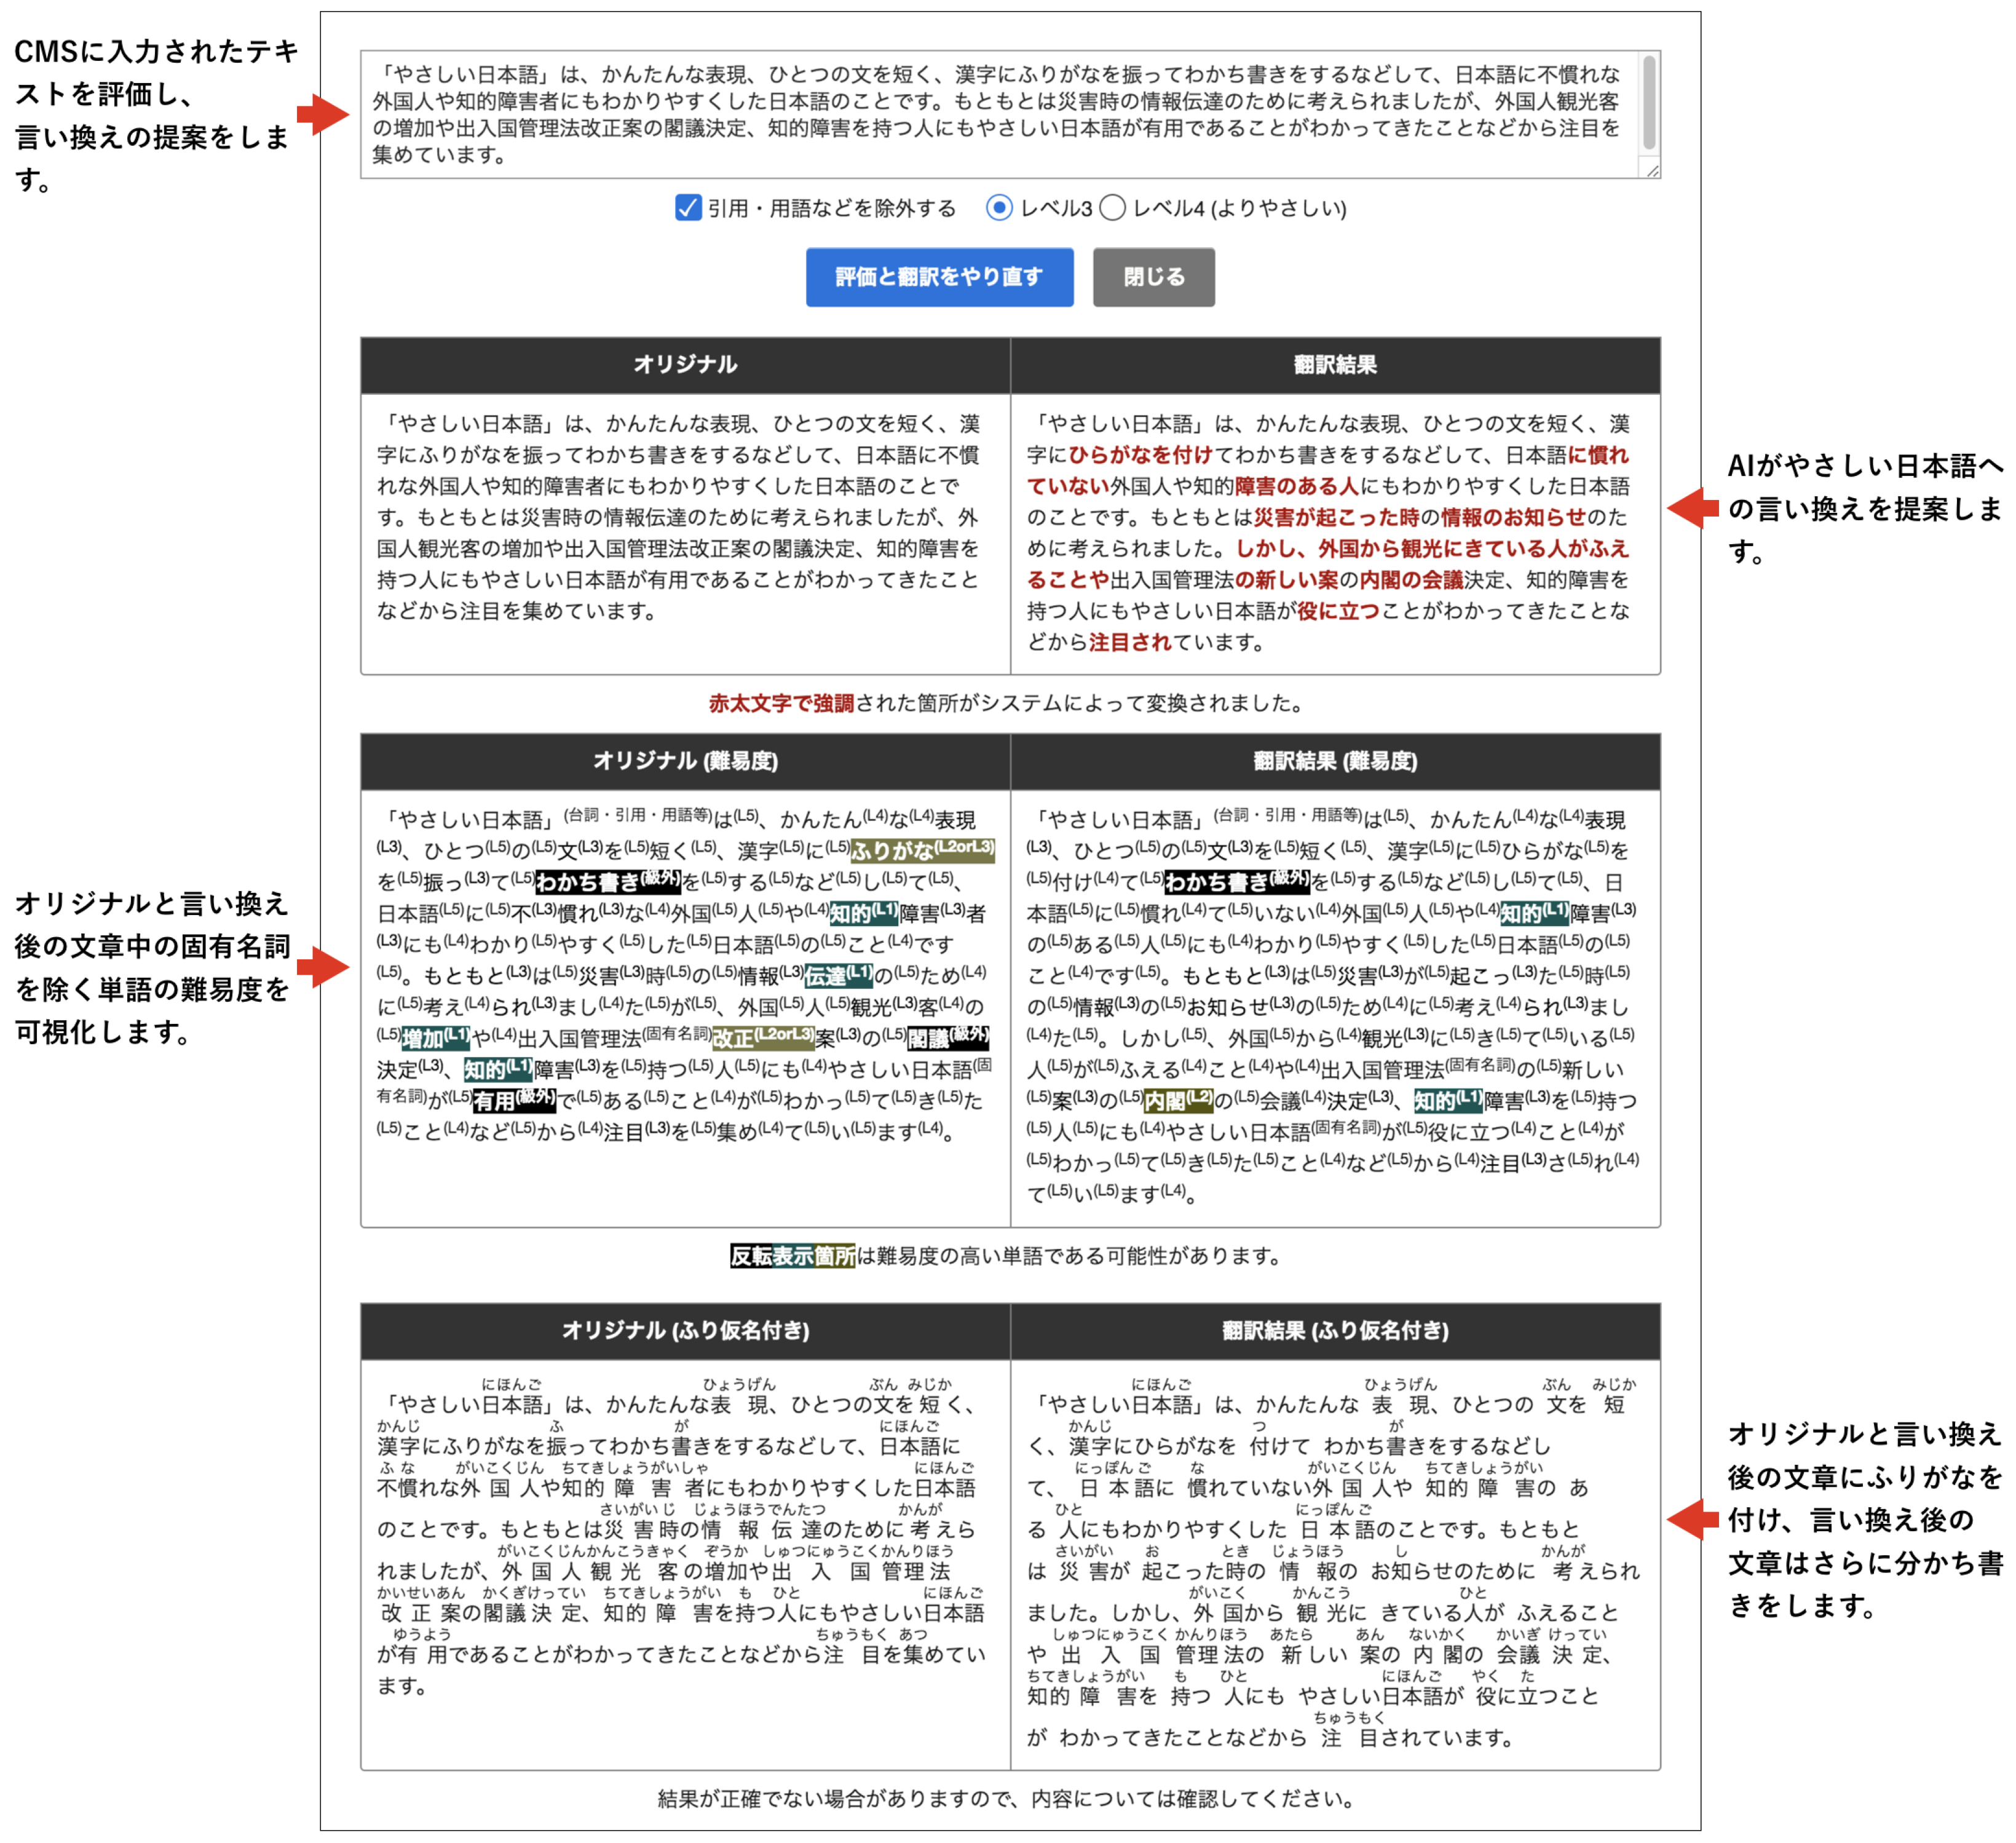 やさしい日本語作成支援機能が提供する画面